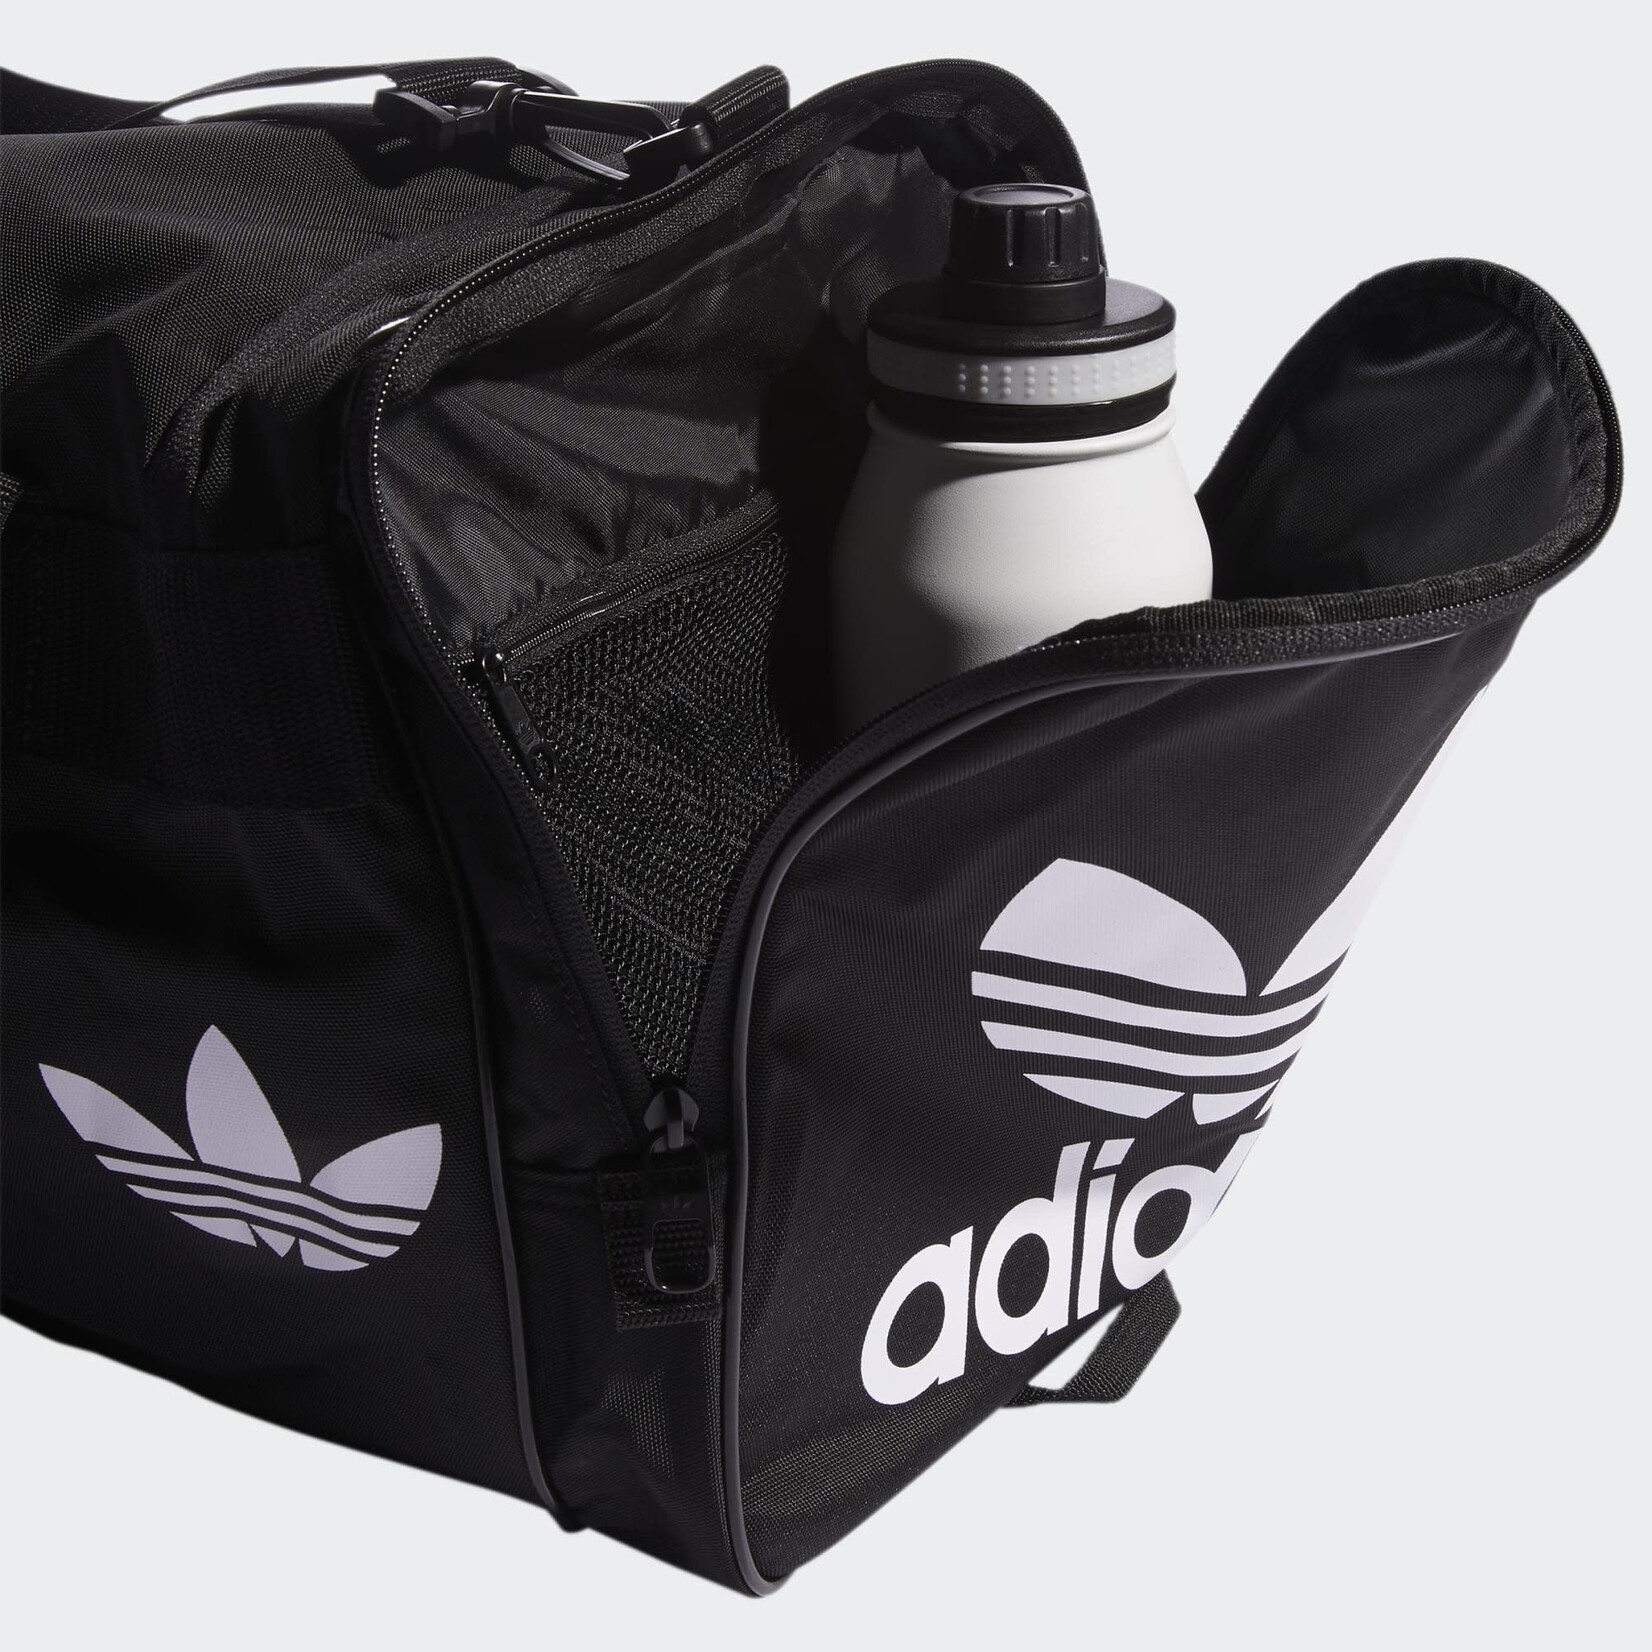 Adidas Adidas Duffle Bag, Santiago II